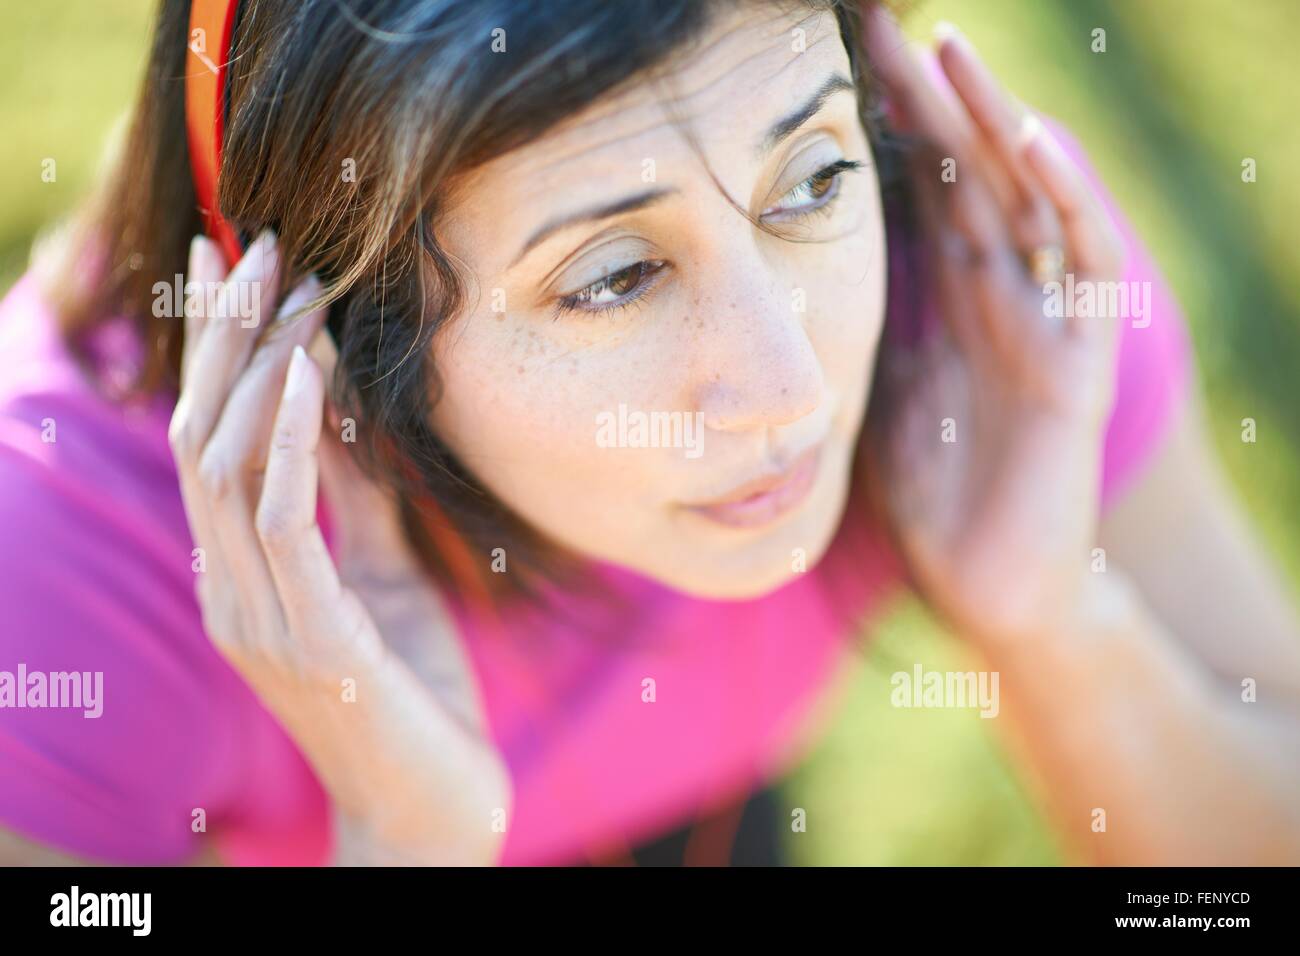 Portrait high angle view of young woman wearing headphones, les mains sur les oreilles à l'écart Banque D'Images